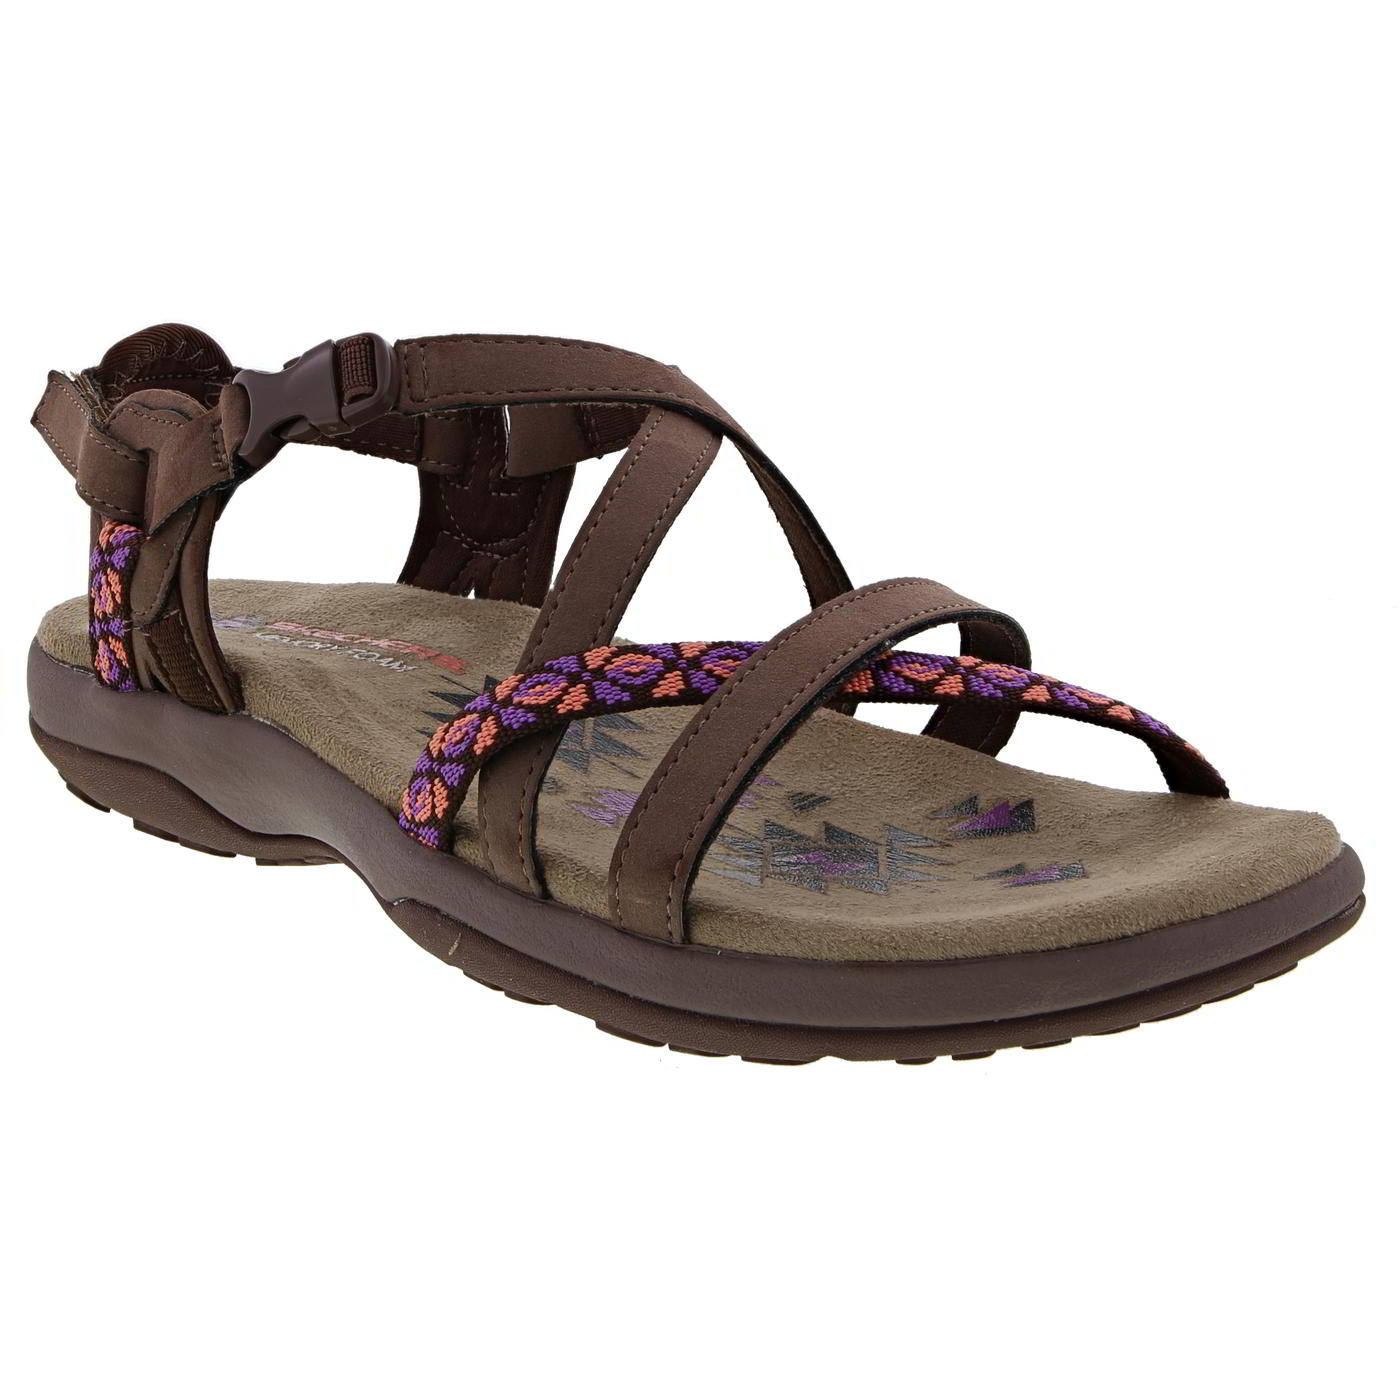 Skechers Womens Reggae Slim Vacay Adjustable Walking Sandals - Chocolate 2951